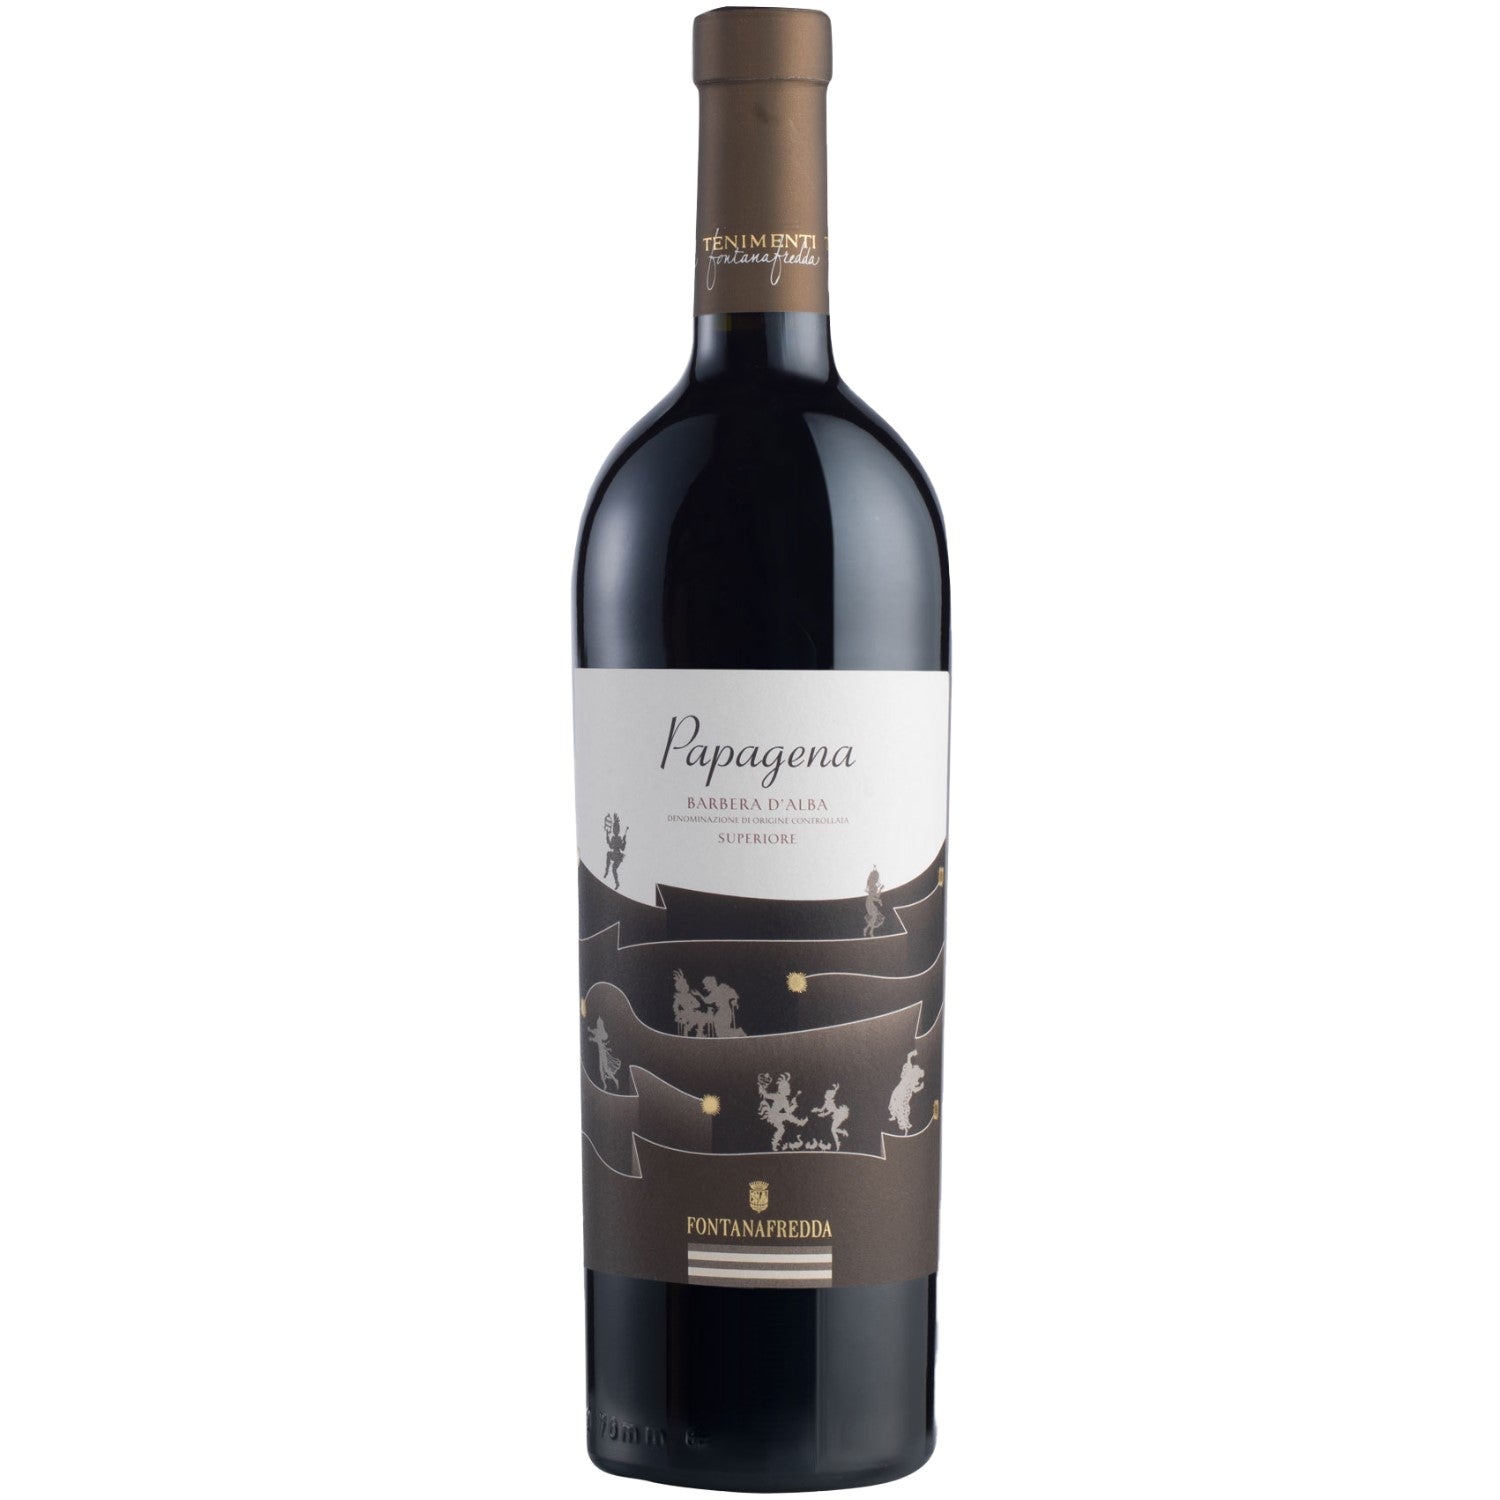 Fontanafredda Papagena Barbera d'Alba Rotwein Wein trocken Italien (3 x 0.75l) - Versanel -